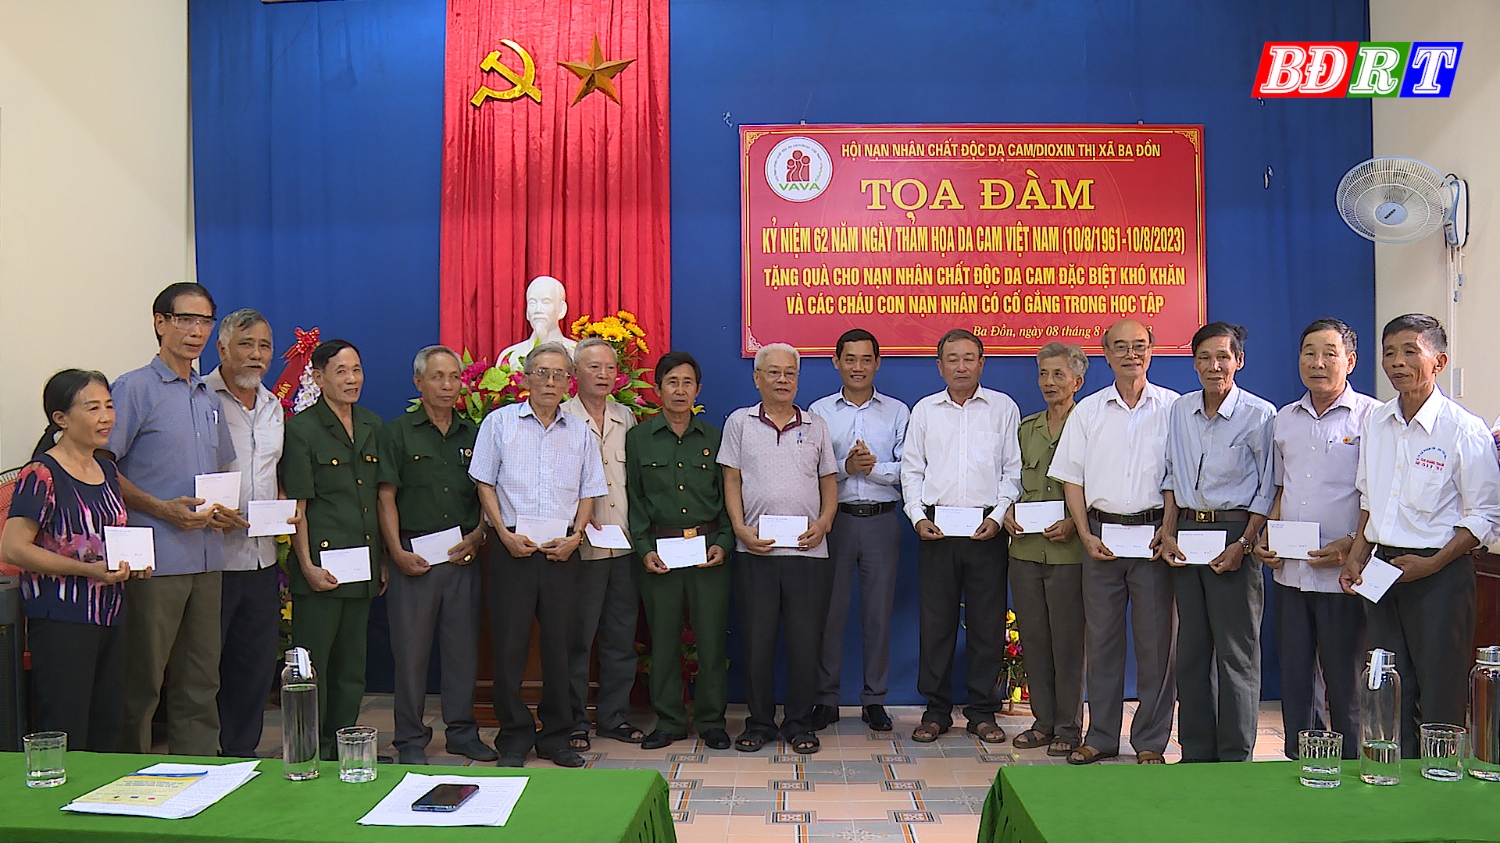 Hội Nạn nhân chất độc da cam Dioxin thị xã Ba Đồn tặng quà cho nạn nhân chất độc da cam có hoàn cảnh khó khăn trên địa bàn thị xã